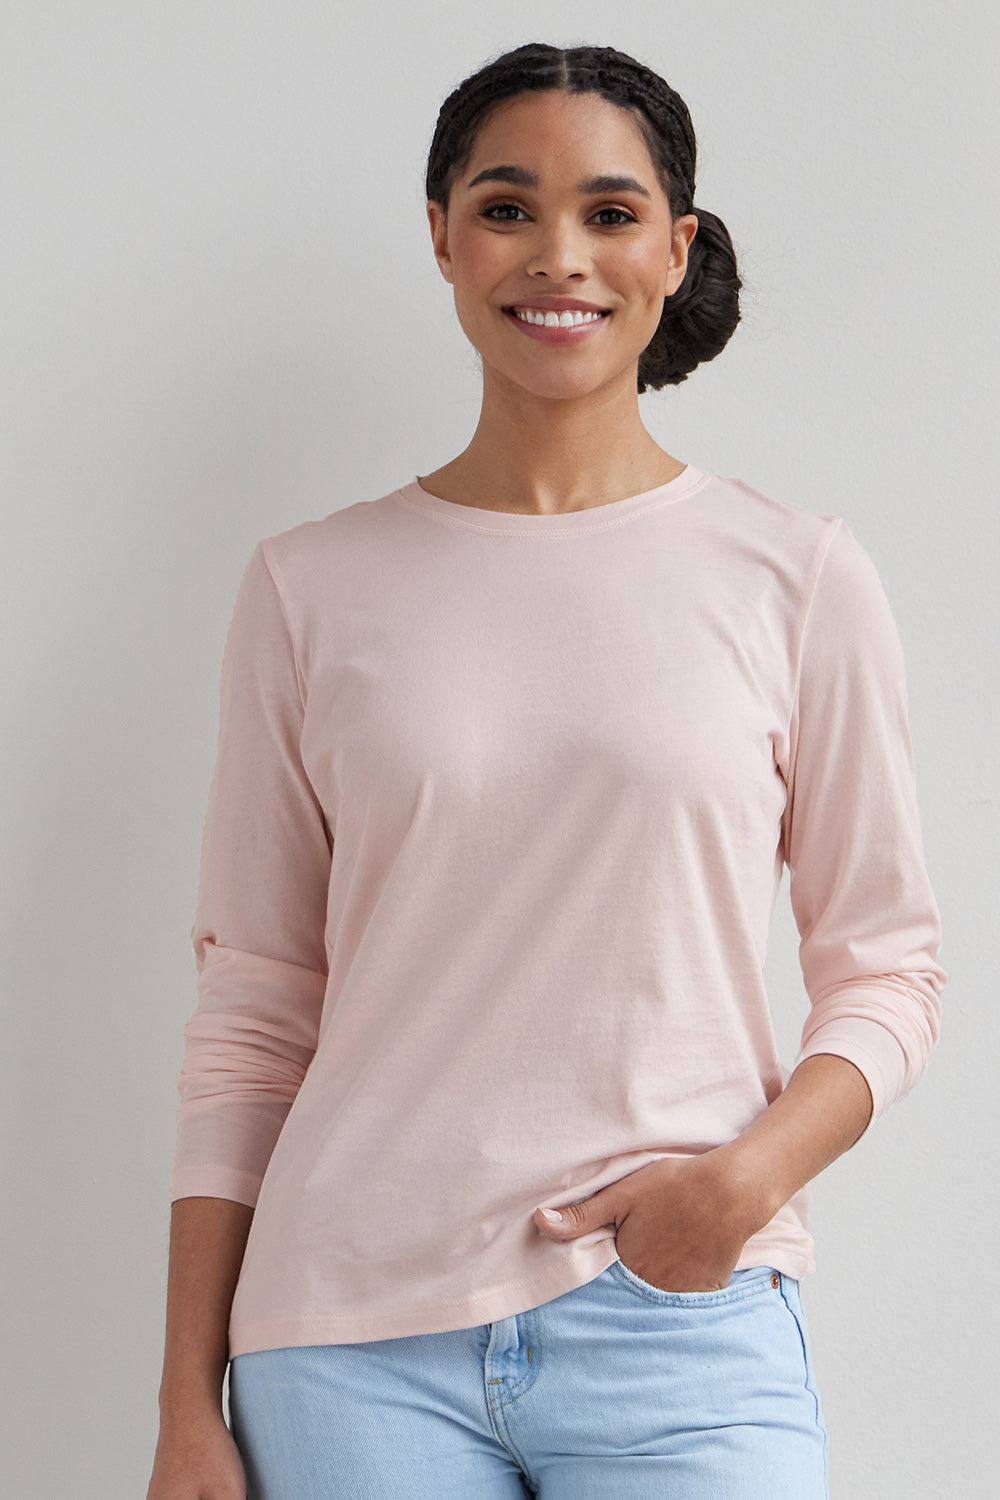 Women's Organic All-Cotton Relaxed Long Sleeve Crew Neck T-Shirt - Fair Indigo, Size XL / Petal Pink